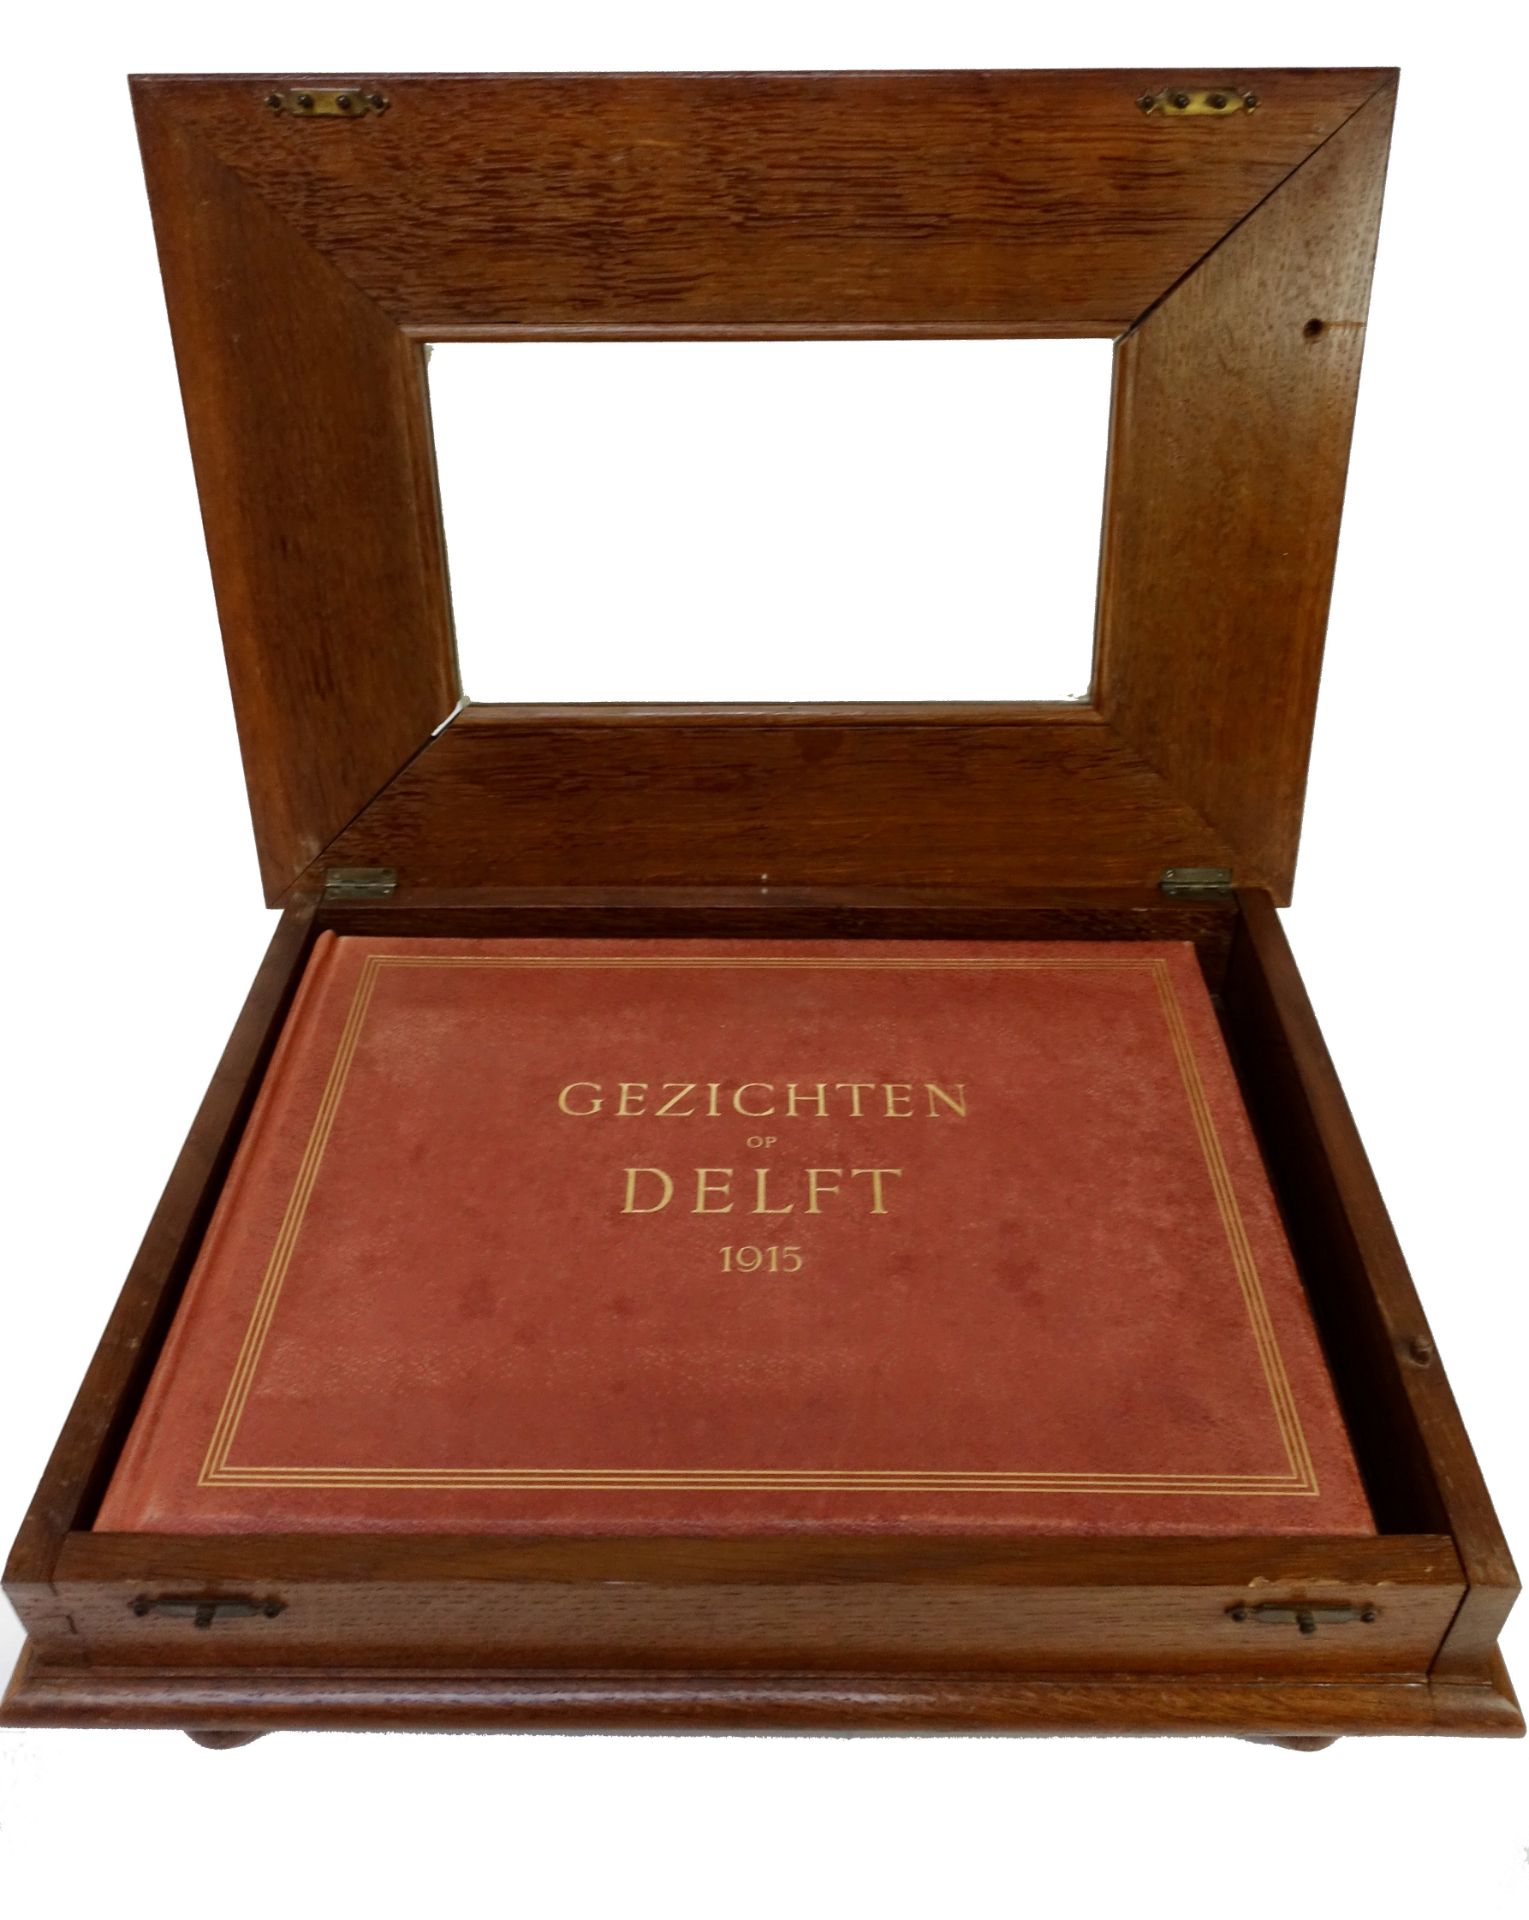 DELFT -- "GEZICHTEN OP DELFT 1915". Album dedicated to the inner city of